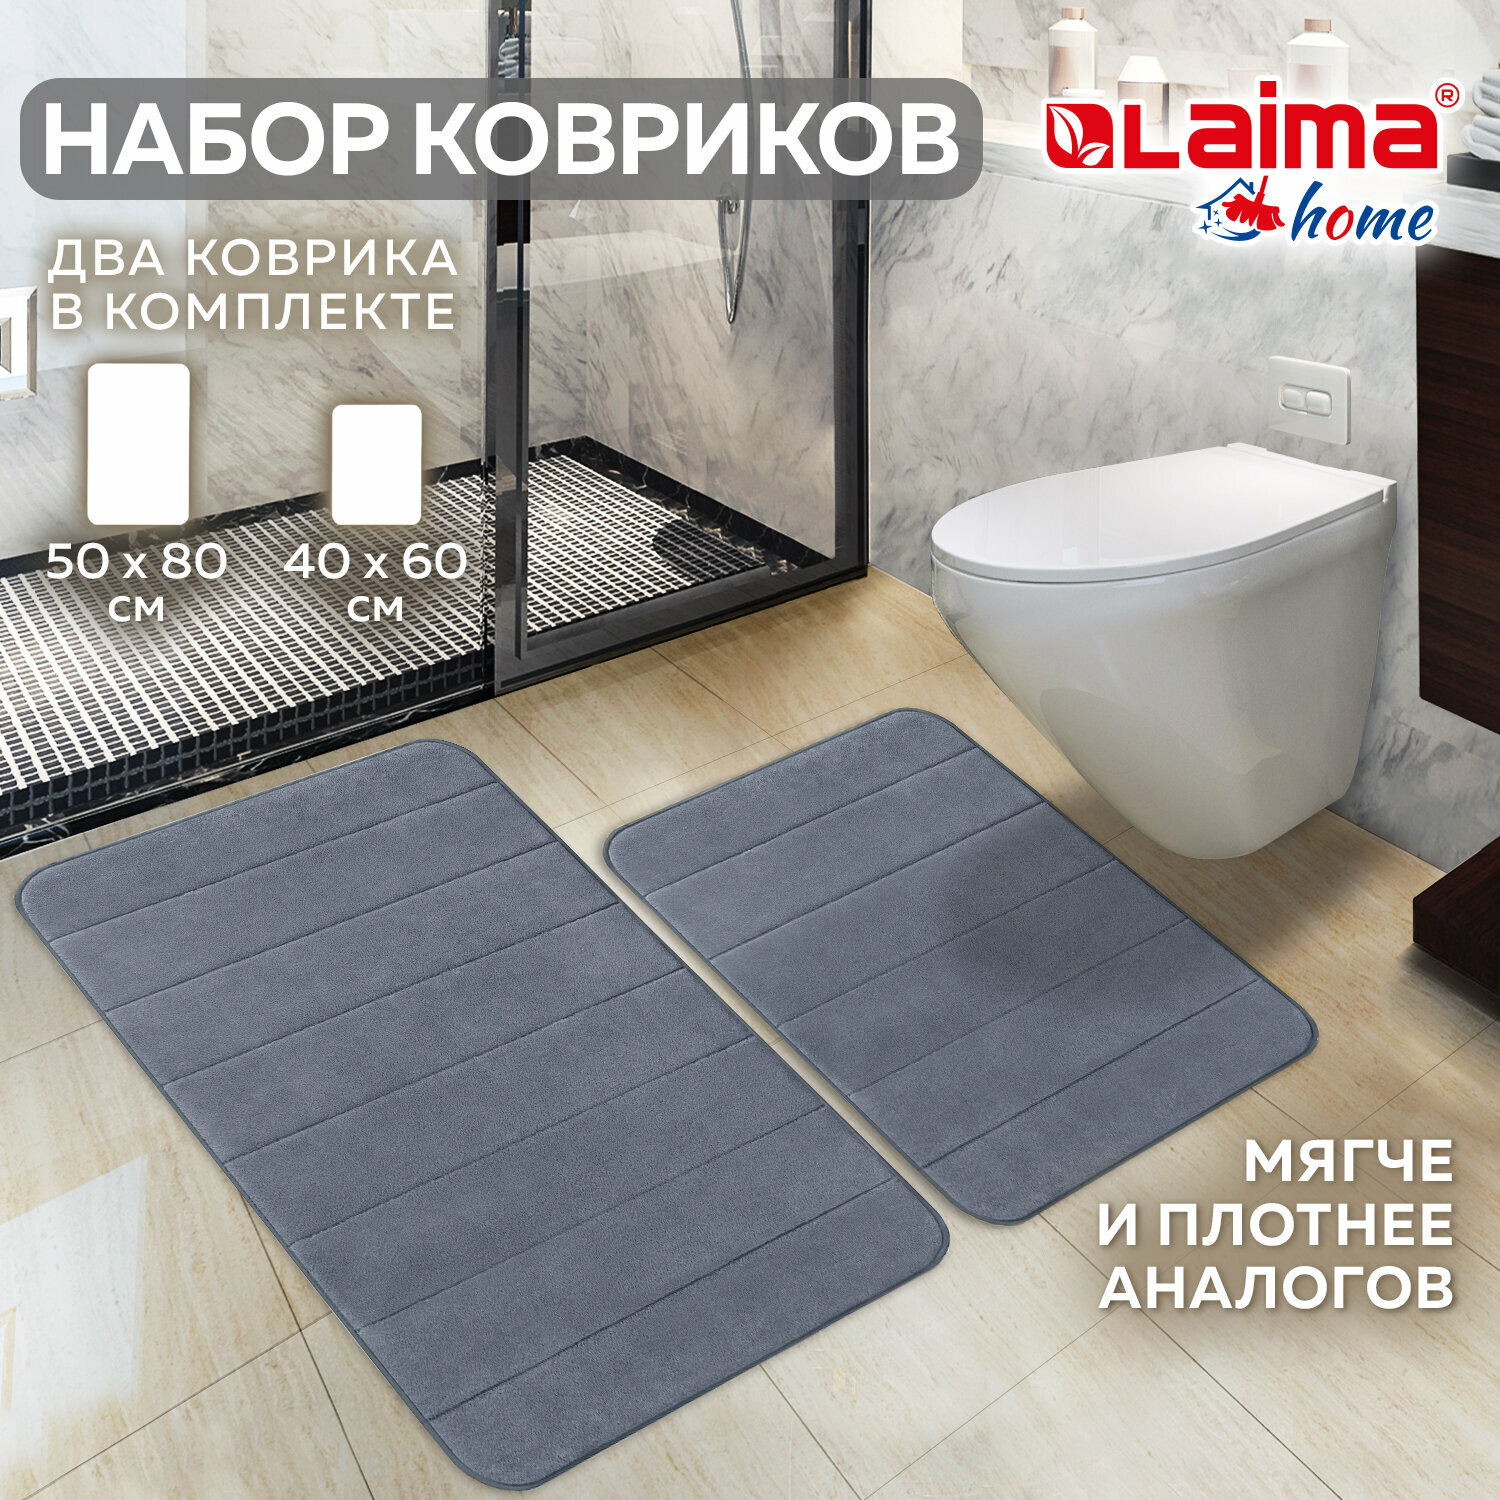 Комплект ковриков Memory Effect для ванной 50*80см и туалета 40*60см темно-серый Laima Home, 608448